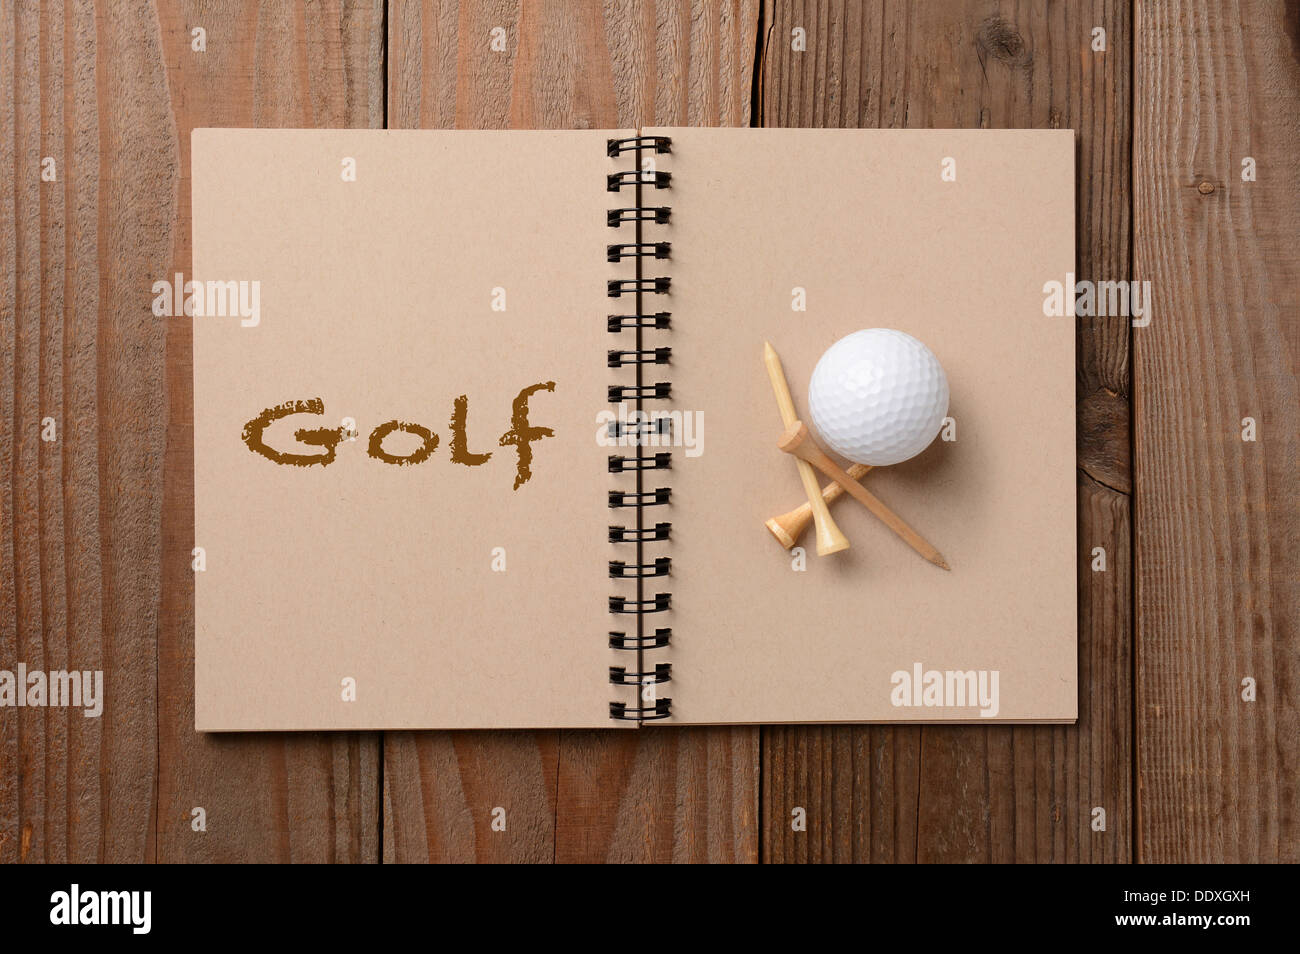 Une balle de golf et tés sur la page vierge d'un ordinateur portable. La page opposée a le mot Golf en toutes lettres. Banque D'Images